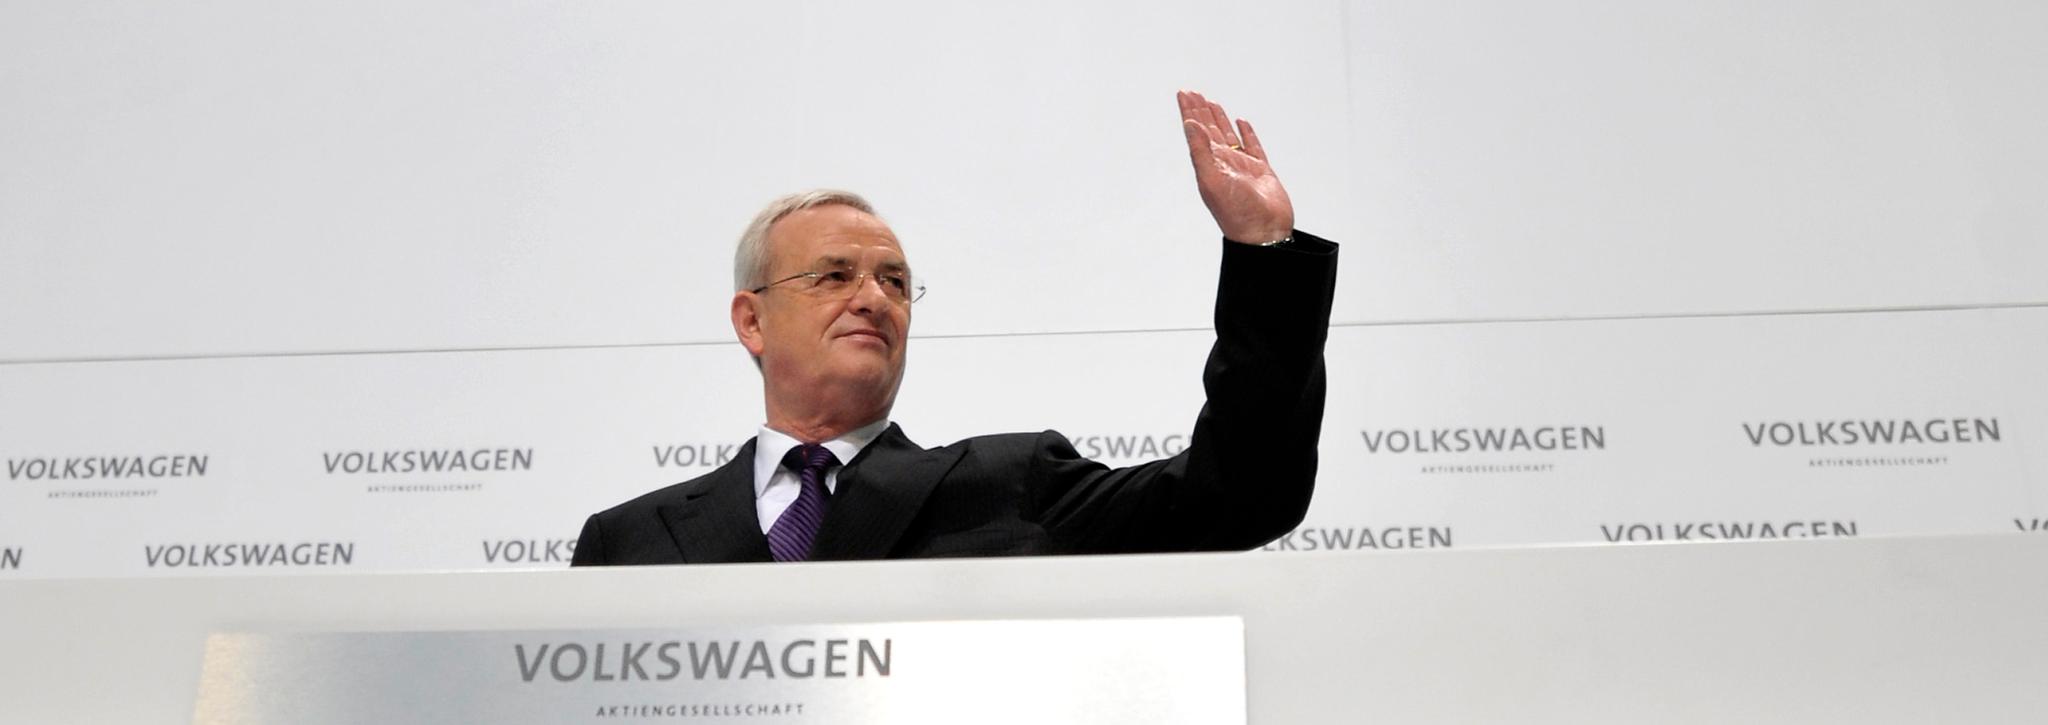 FREDAG FÅR HAN VITE: Volkswagen-sjef Martin Winterkorn får vite fredag hvorvidt han får forlanget kontrakten eller ikke. 